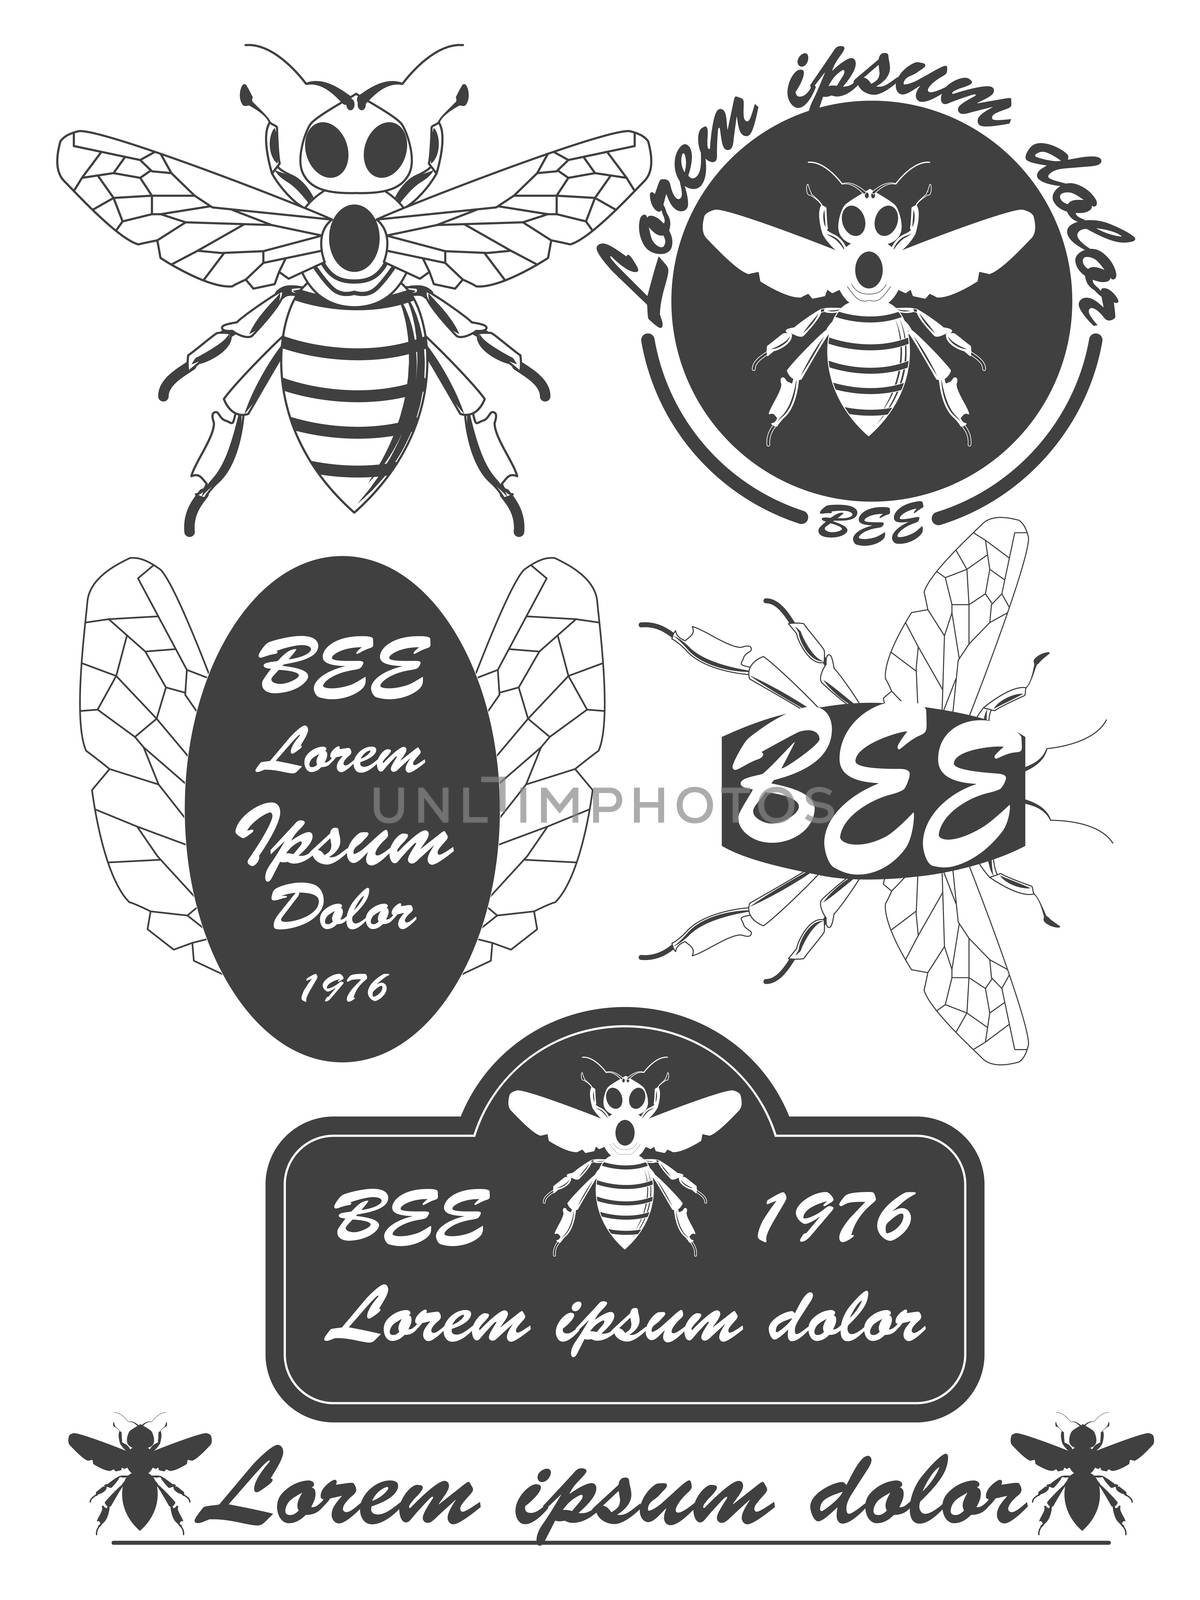 Set of vintage honey, bees labels, badges and design elements. illustration